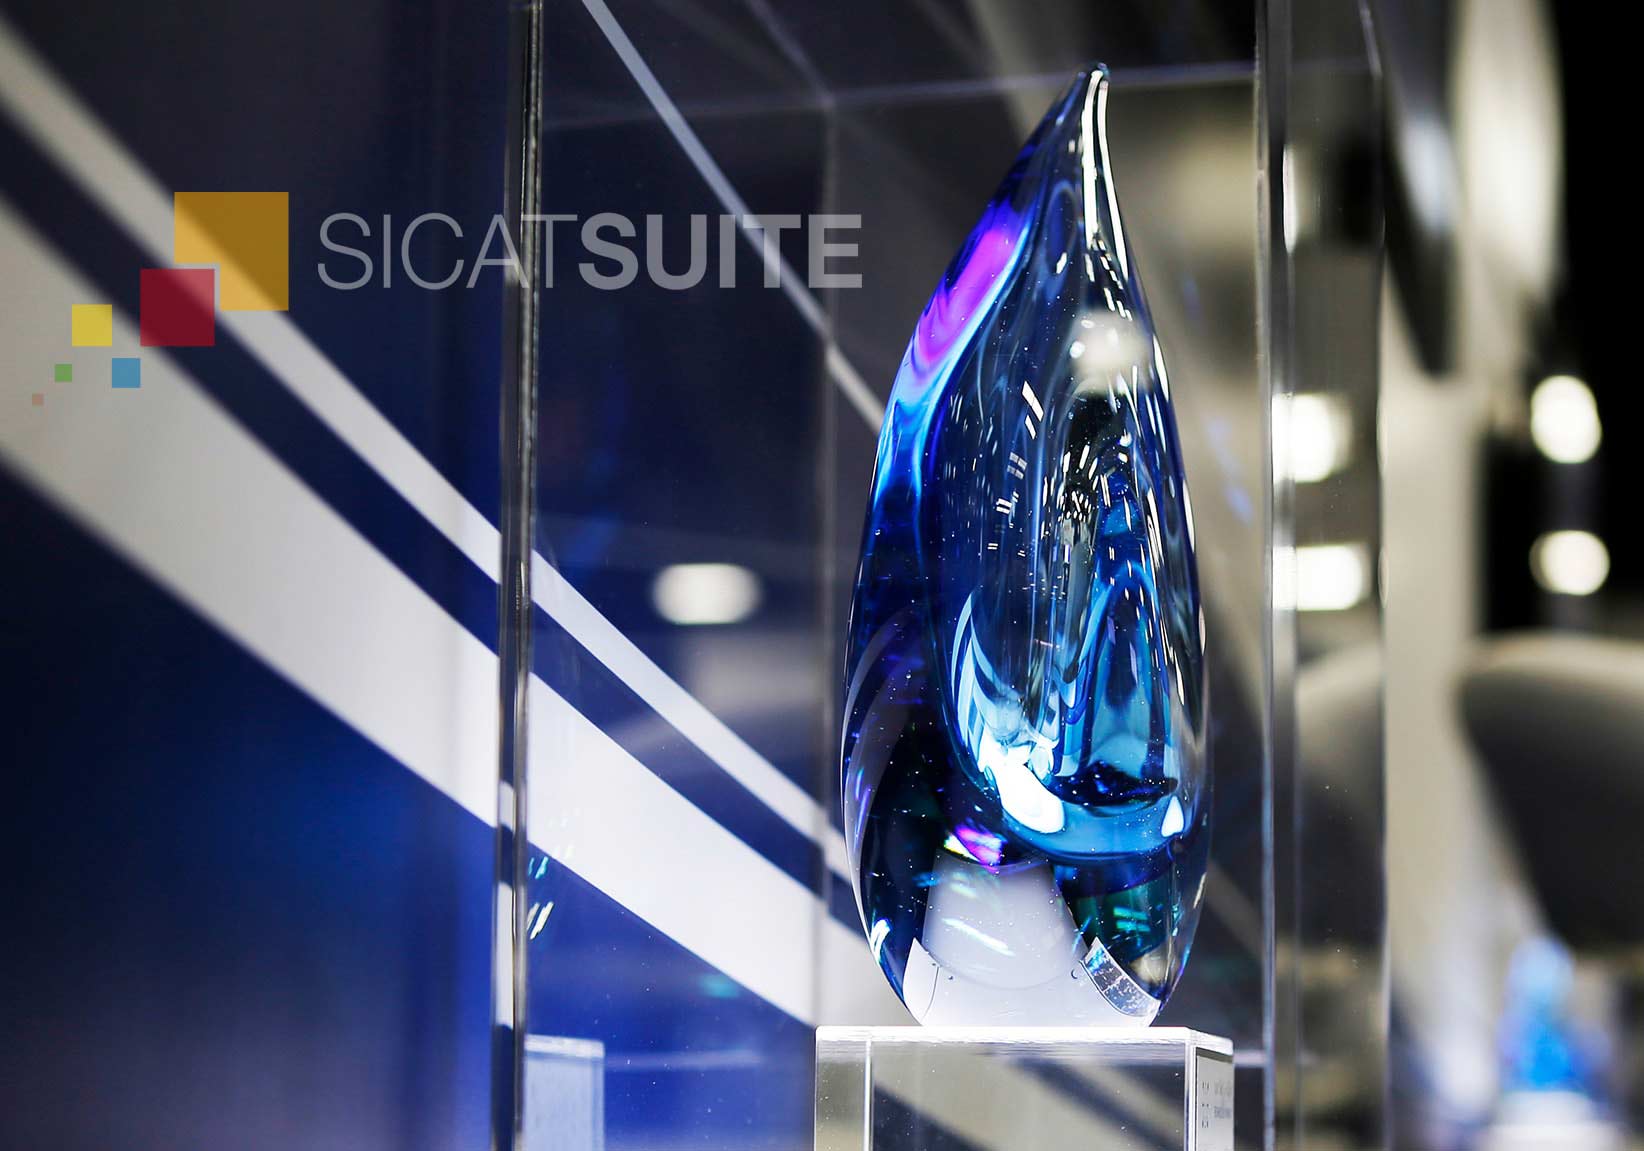 sicat-suite-award